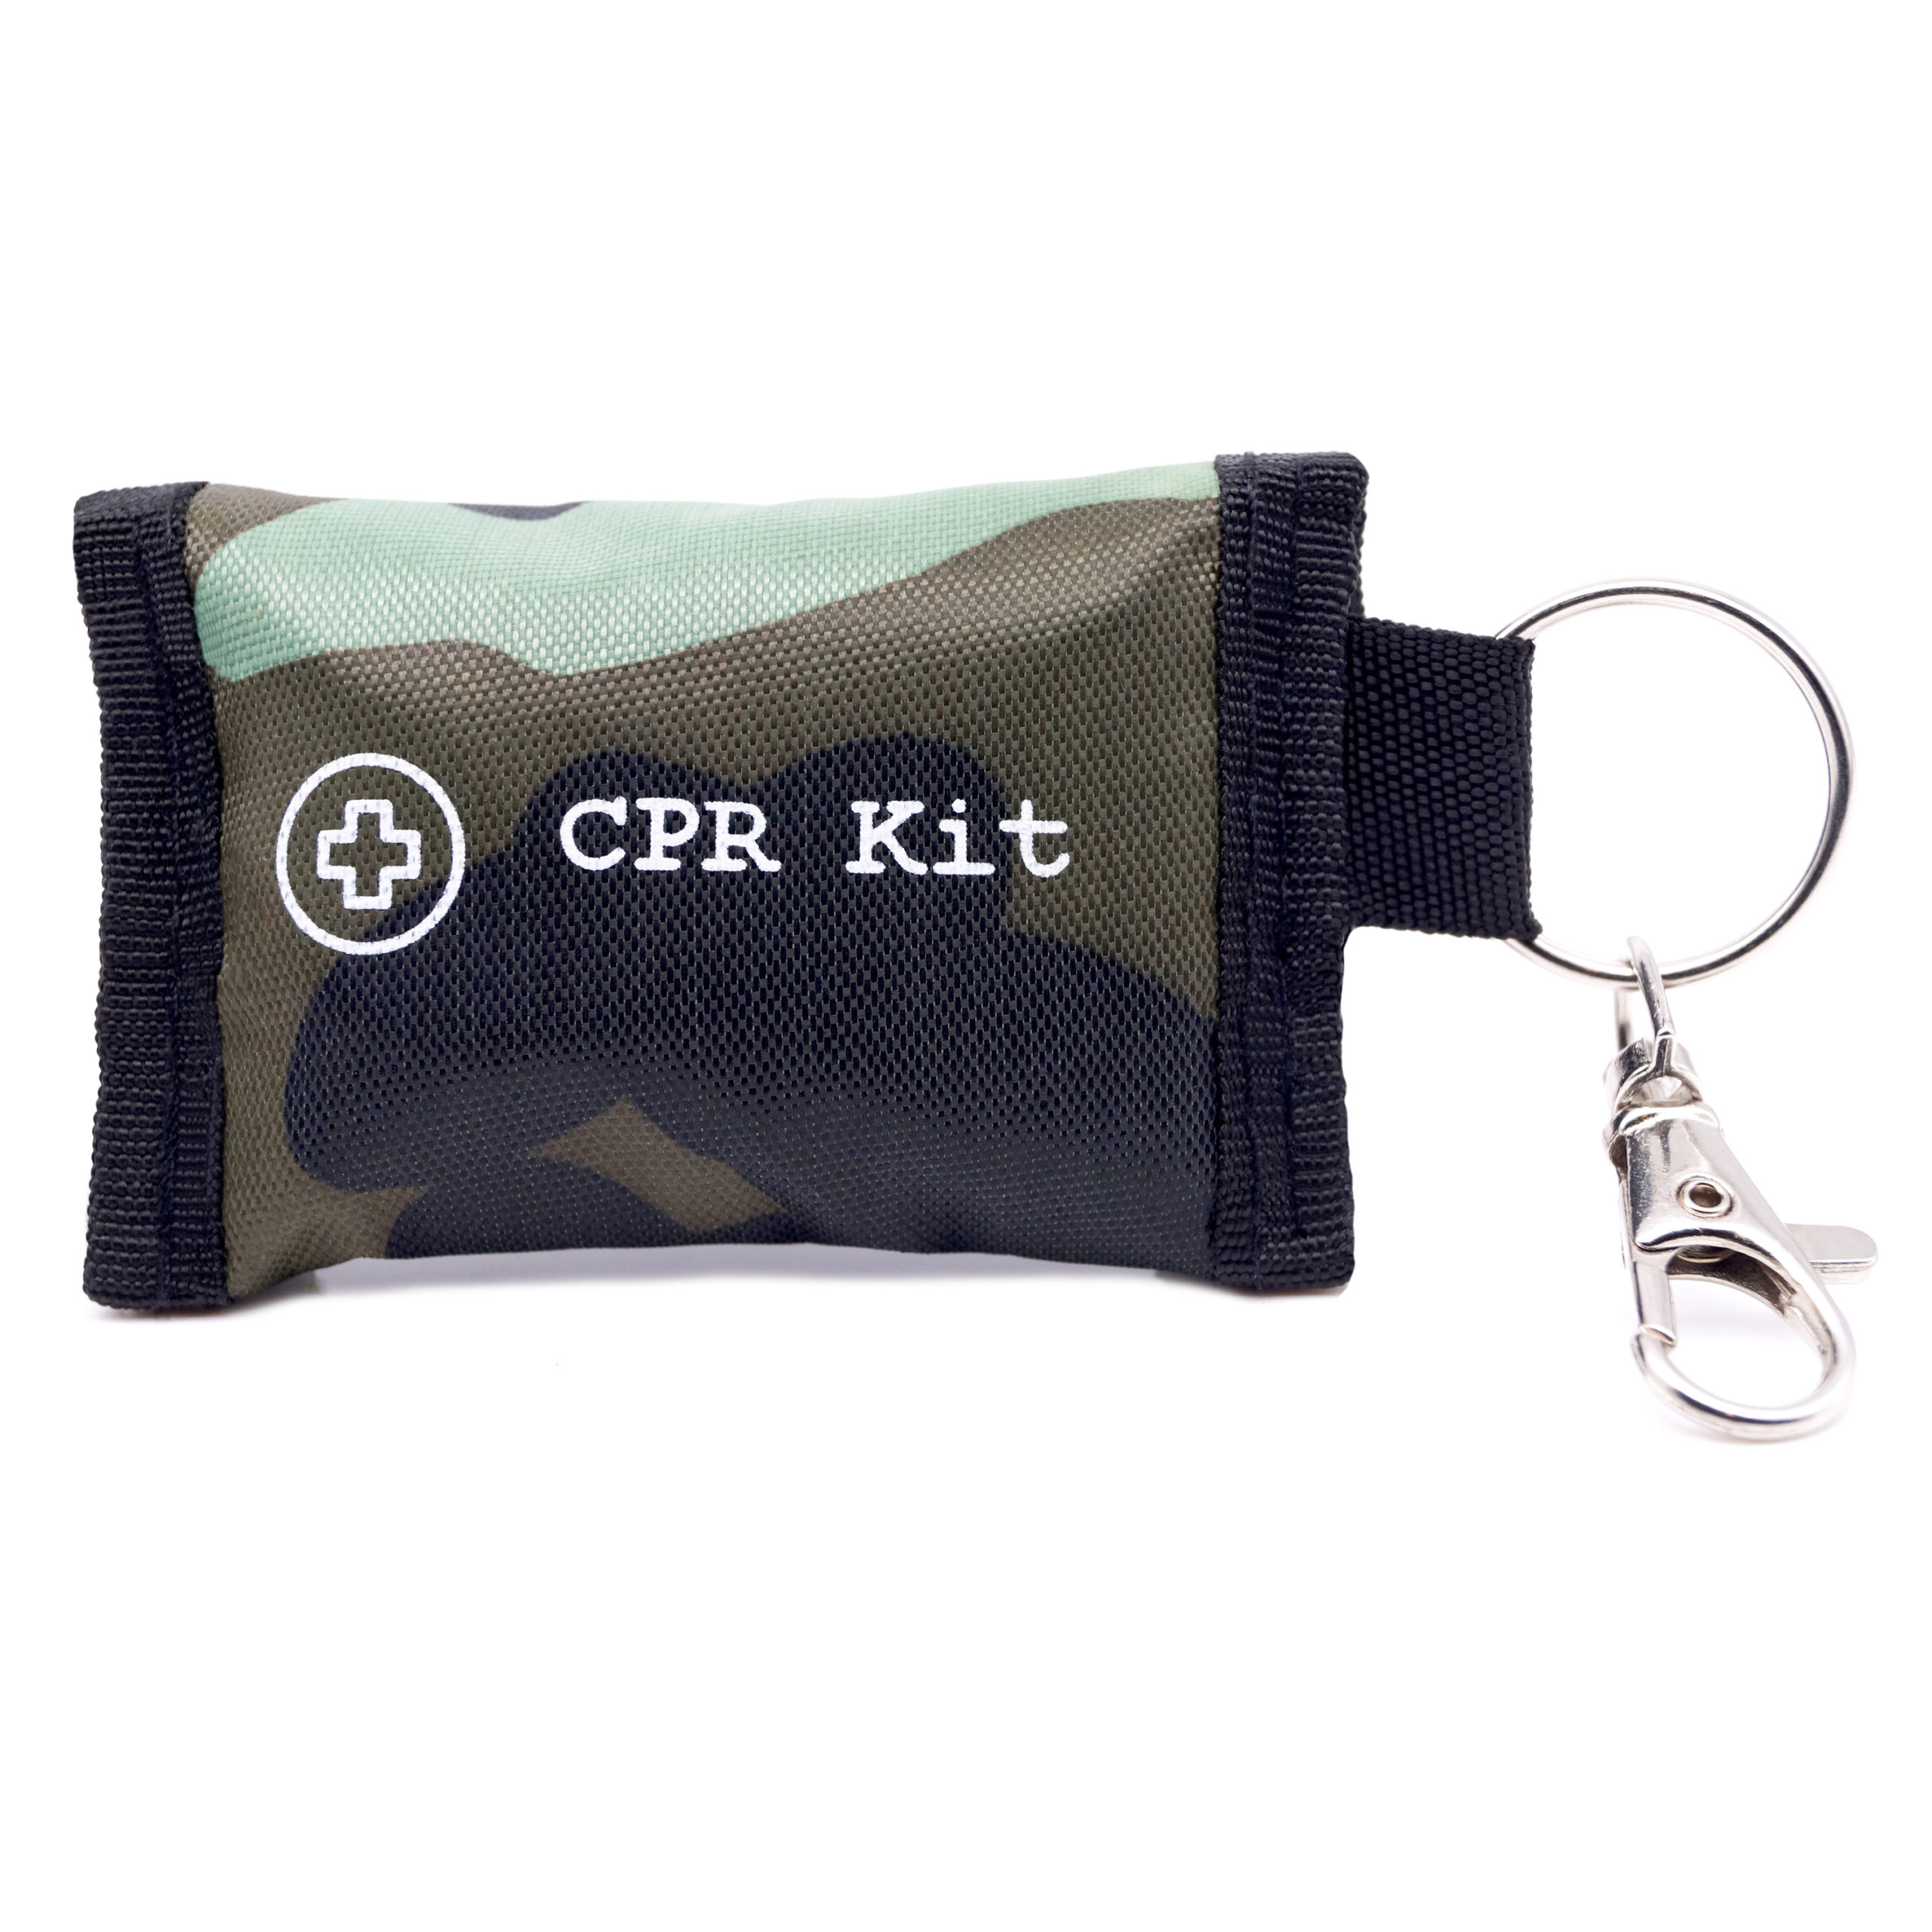 PFY - CPR Maske für den Schlüsselbund